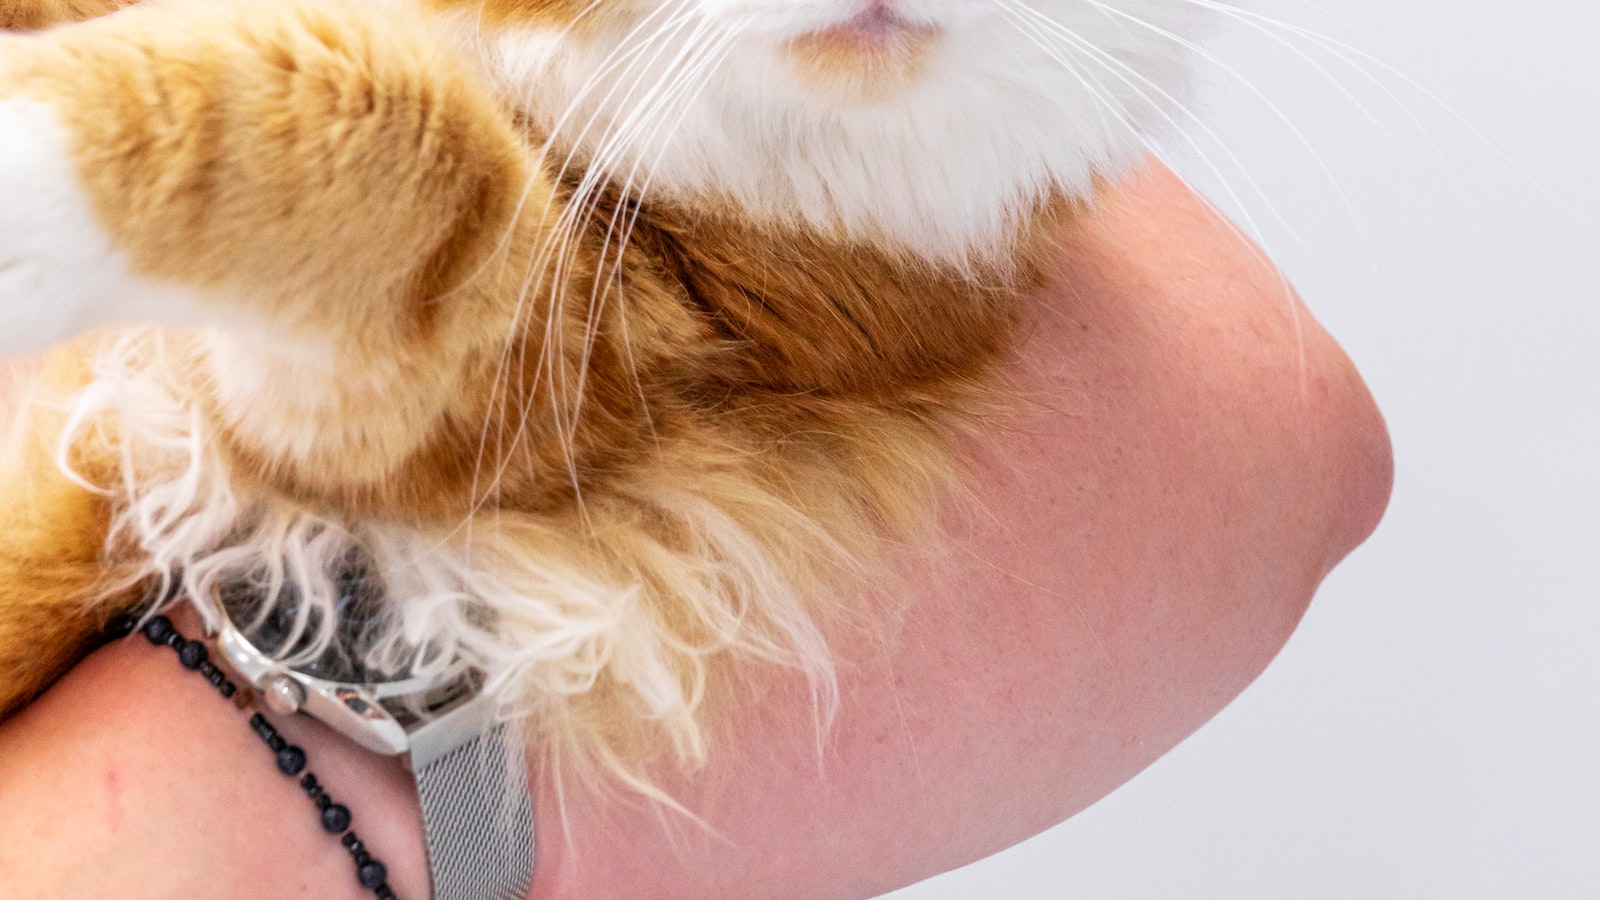 2. Gesundheitsrisiko für Katzen: Was passiert, wenn sie Knoblauch fressen?